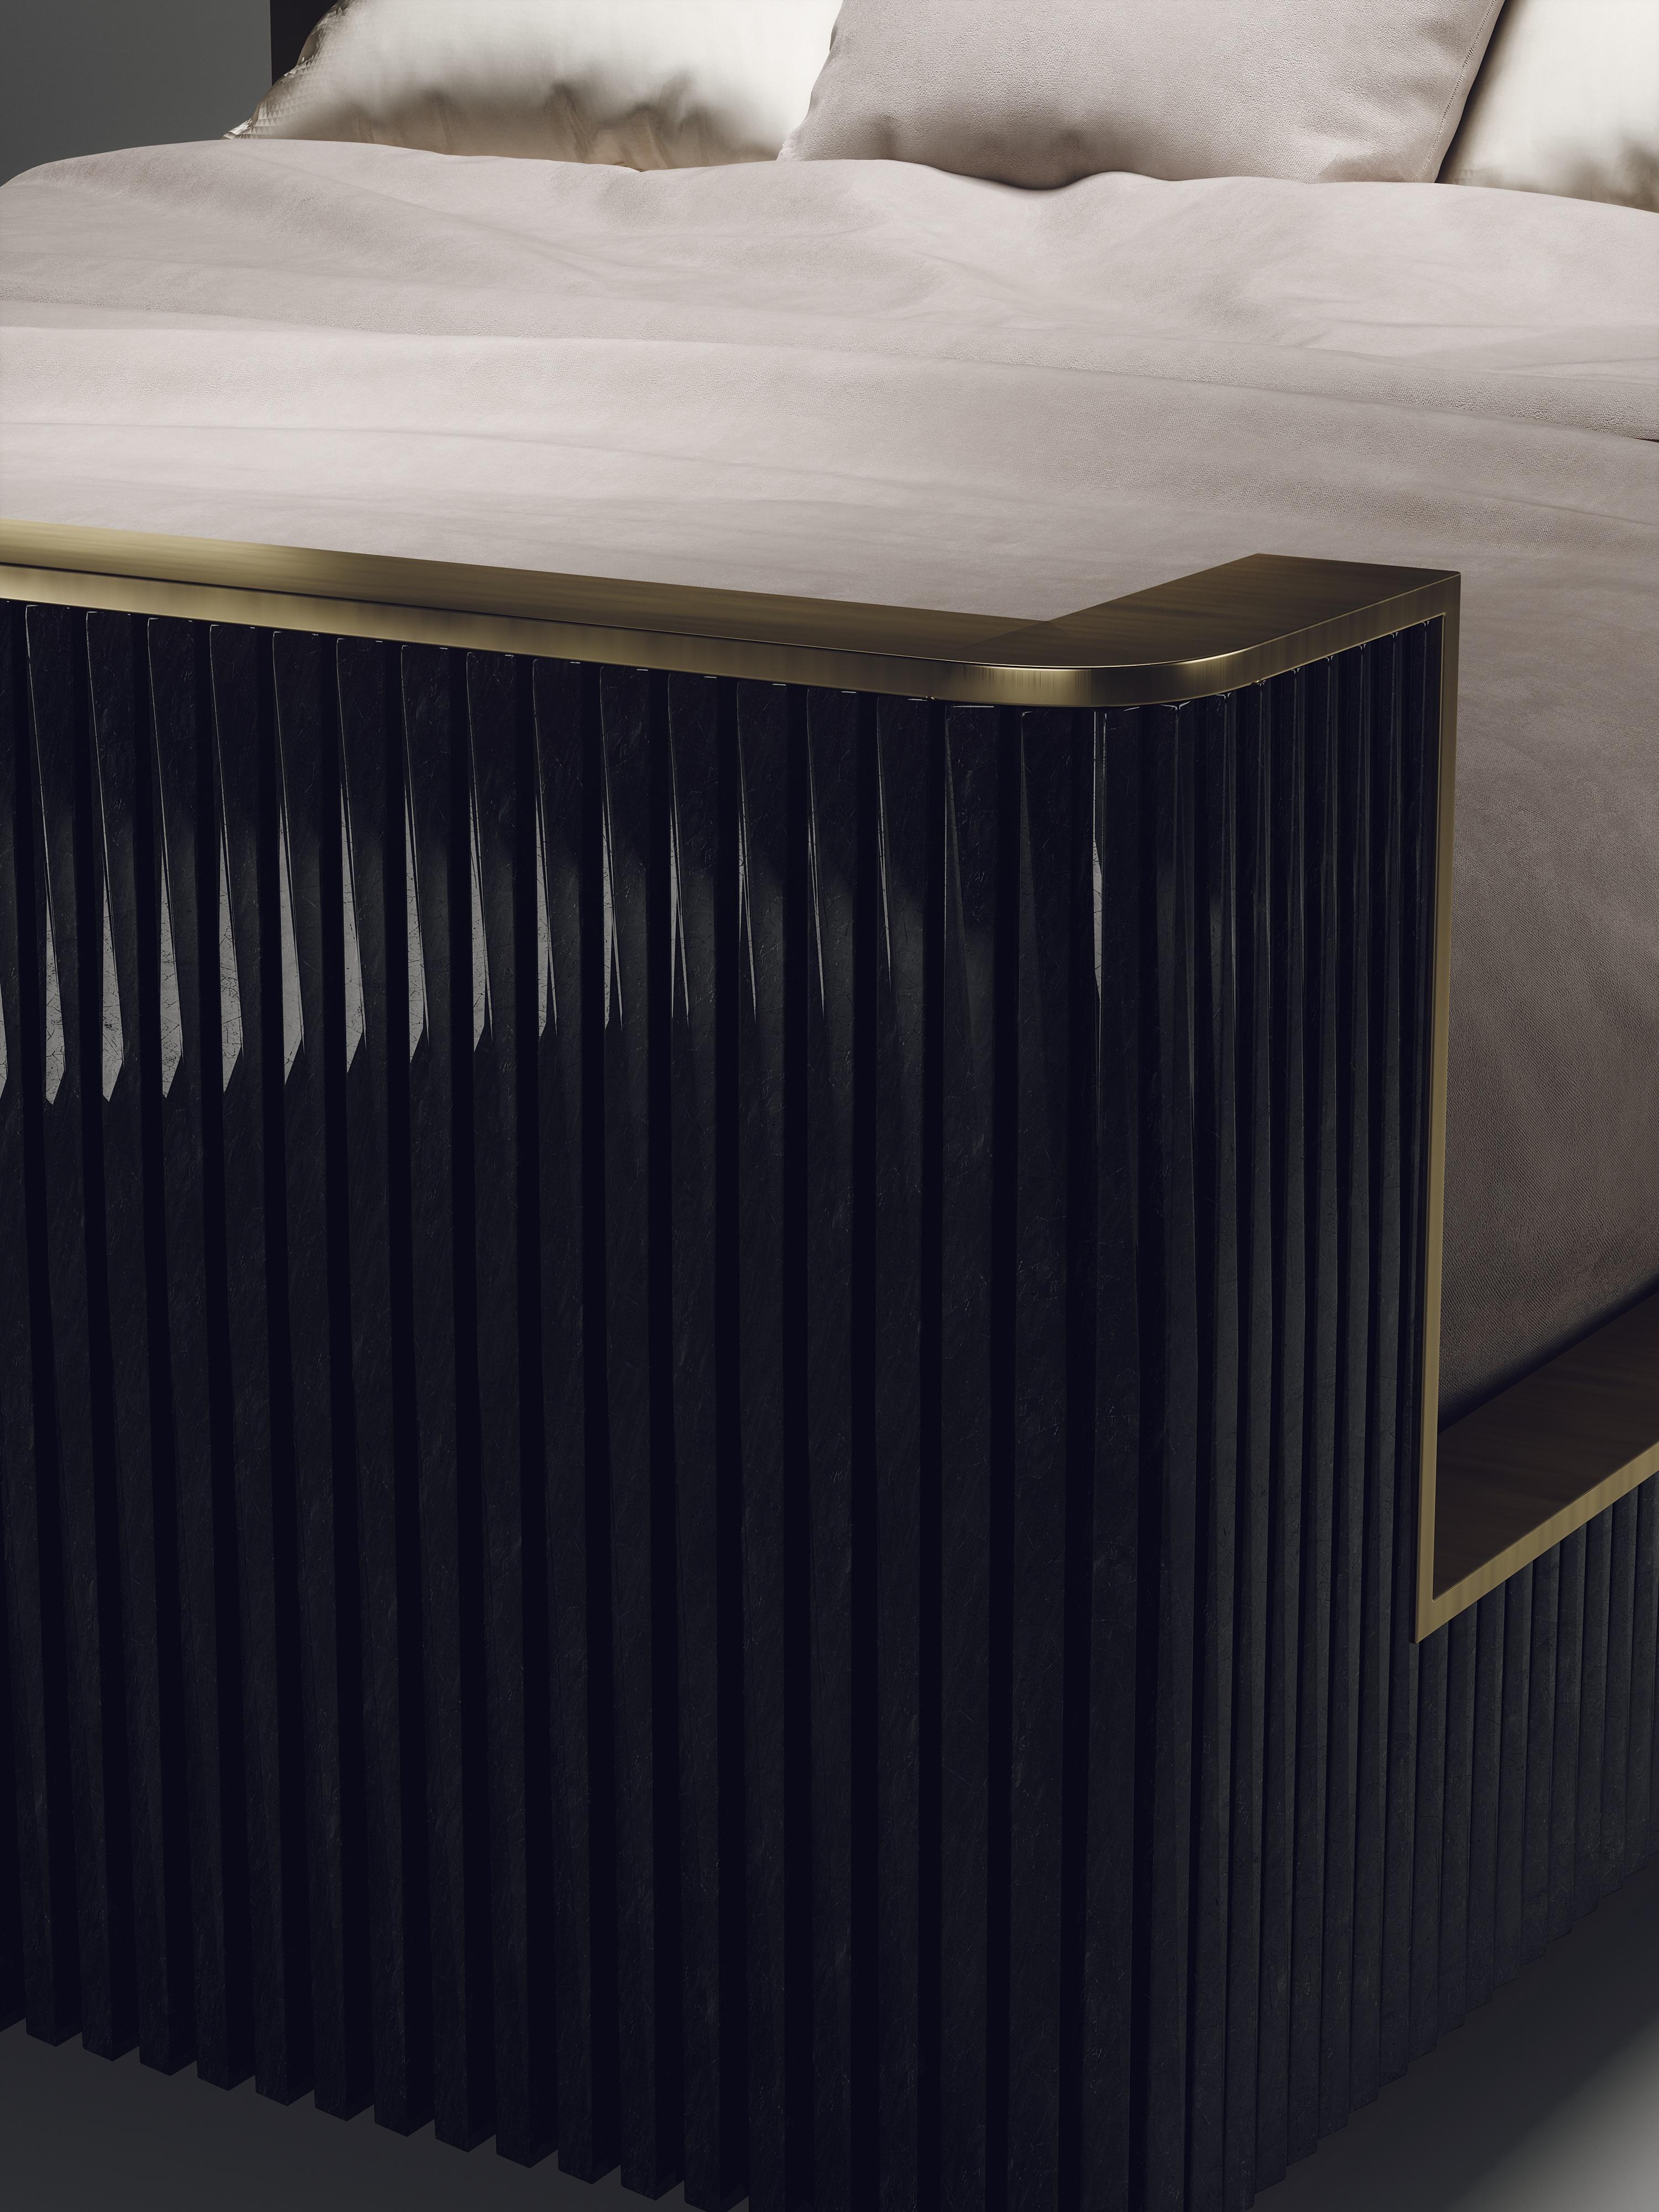 Das geriffelte Bett aus schwarzer Federschale und Bronze-Patina-Messing von R&Y Augousti ist ein einzigartiges Stück. Dieses moderne und elegante Design ist ein subtiles Art-Deco-Statement für jedes Schlafzimmer. Die Intarsien und die handwerklichen